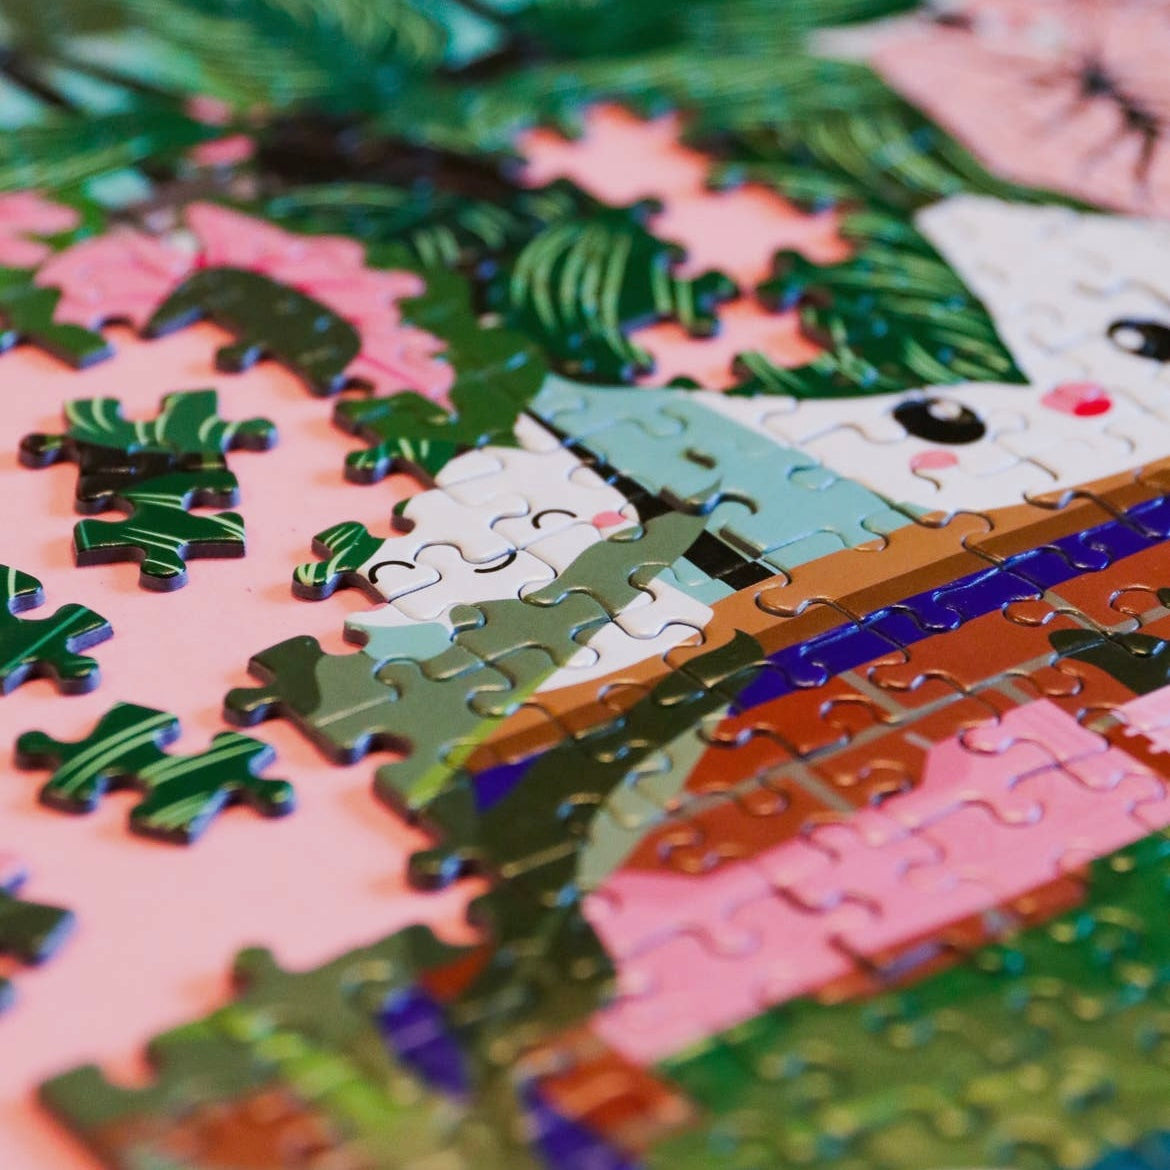 Never Enough Plants - jigsaw puzzle 1000 pieces